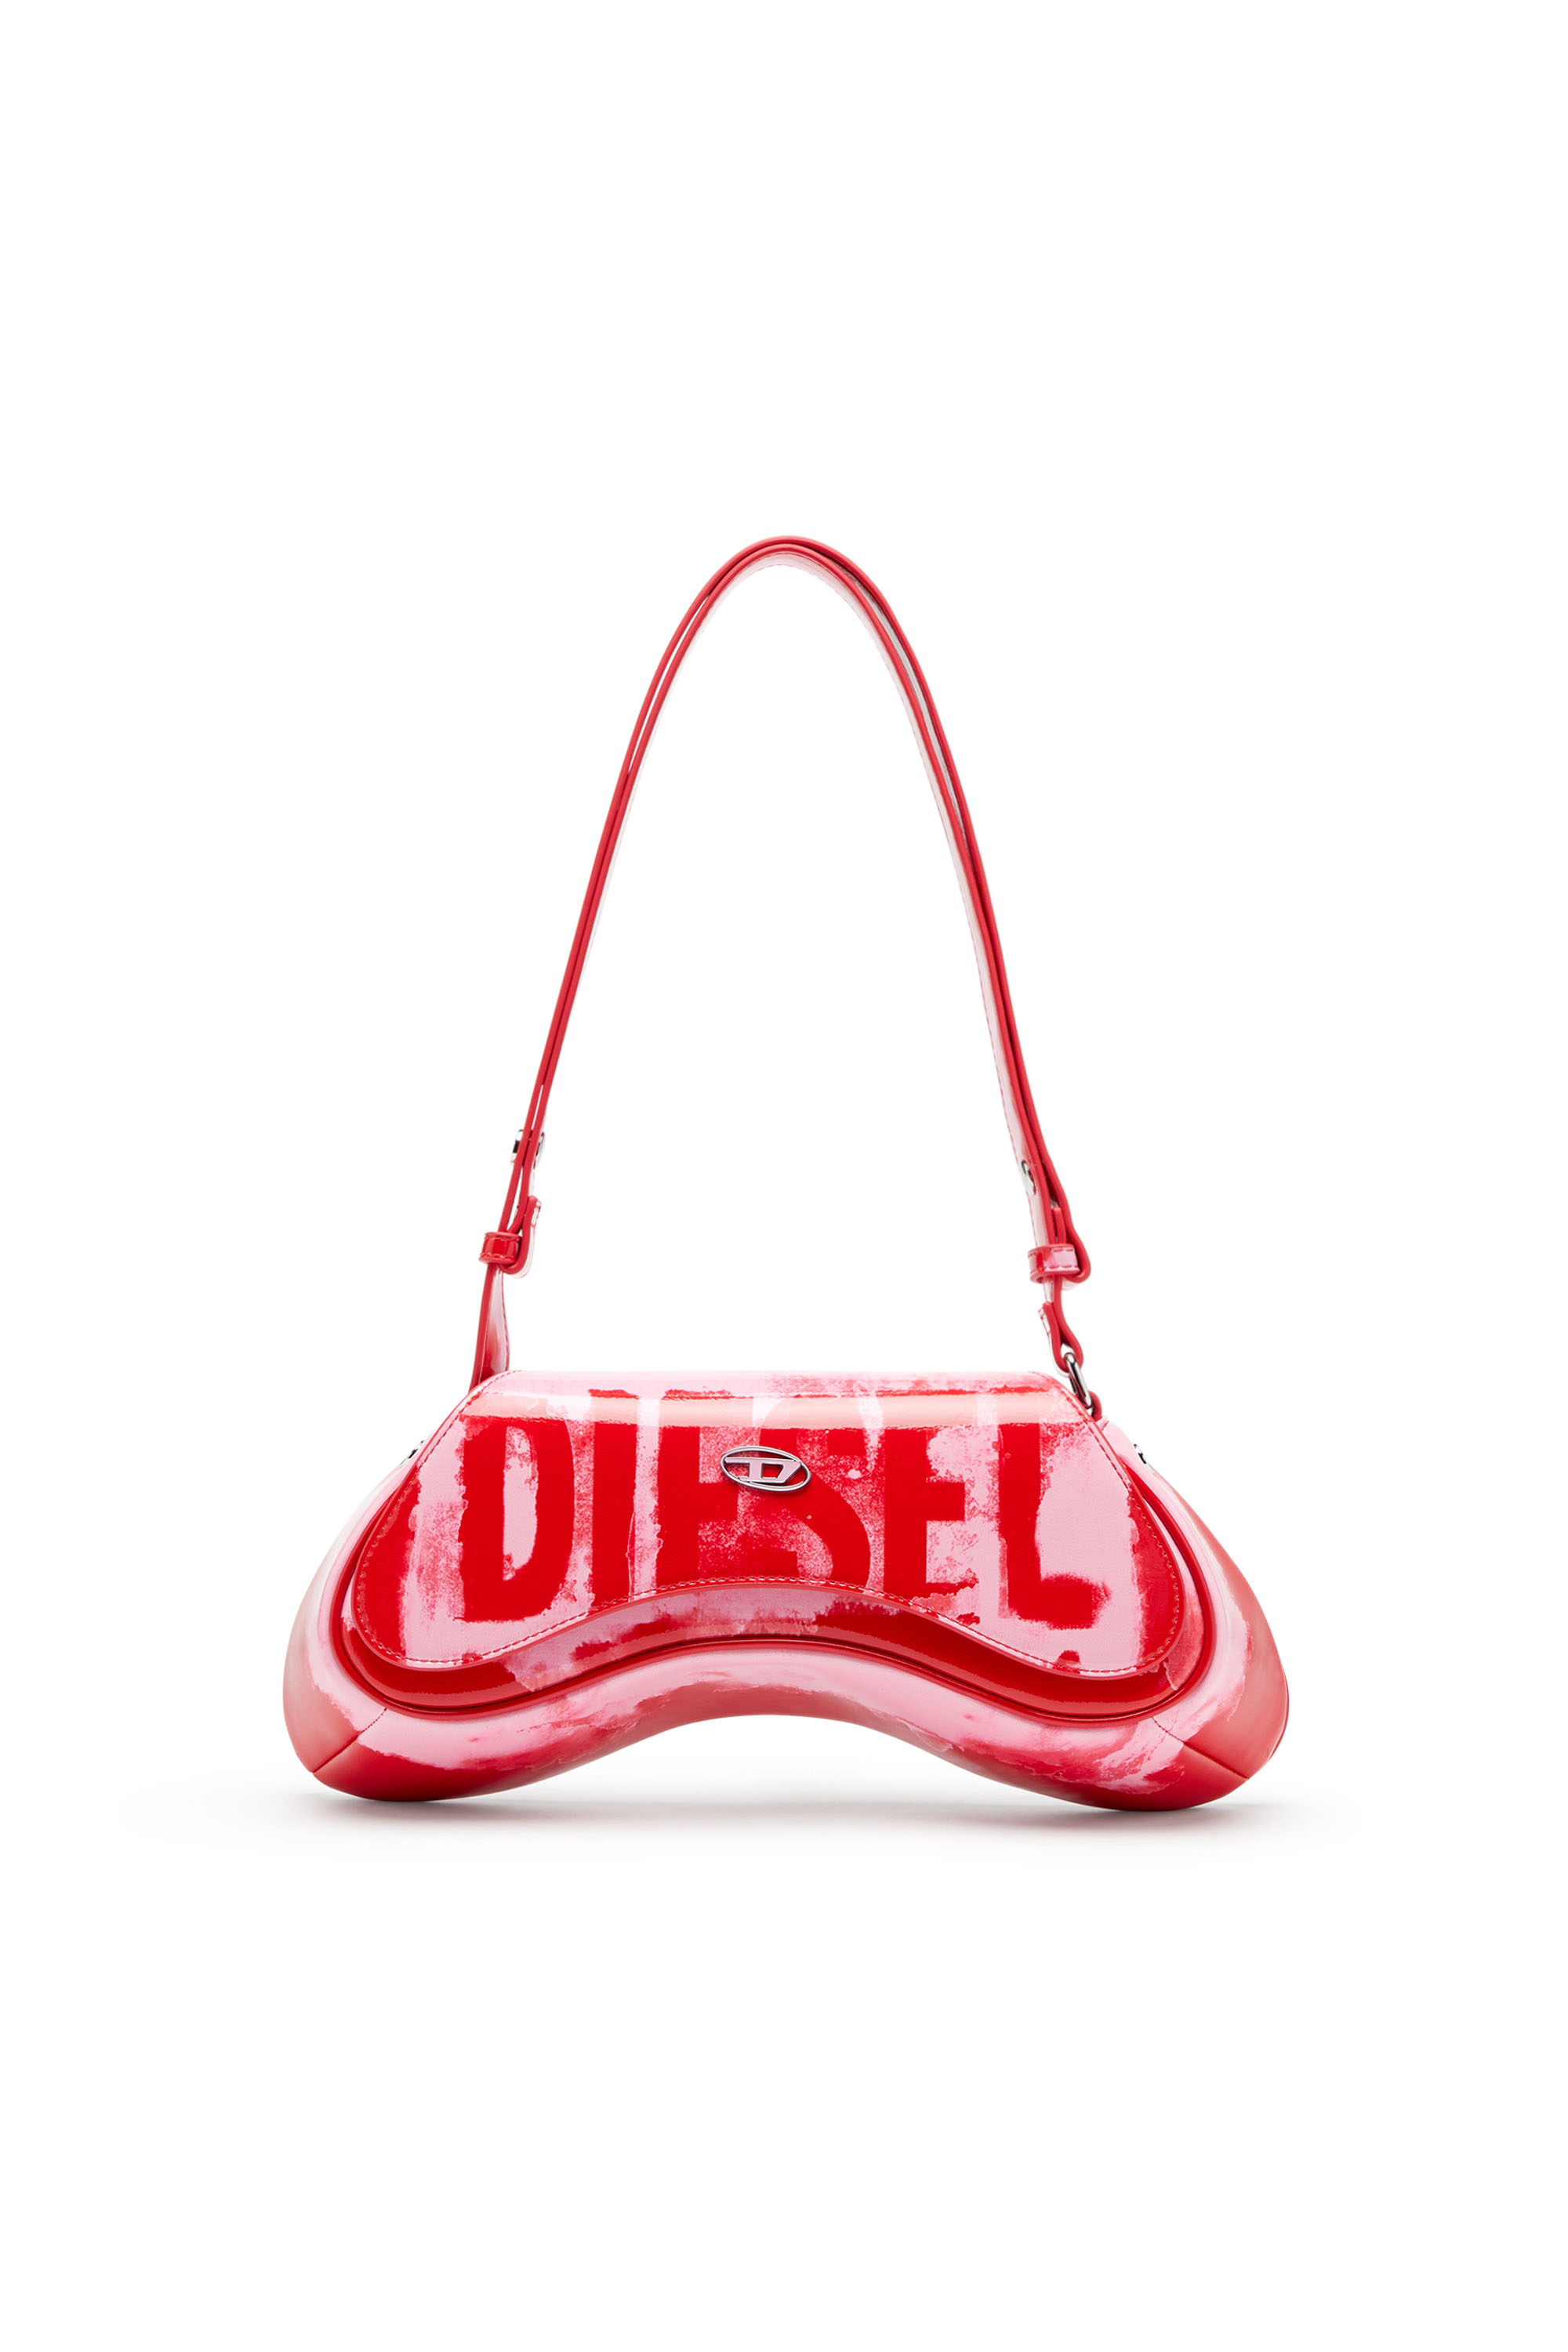 Diesel - PLAY CROSSBODY, Pink/Red - Image 1